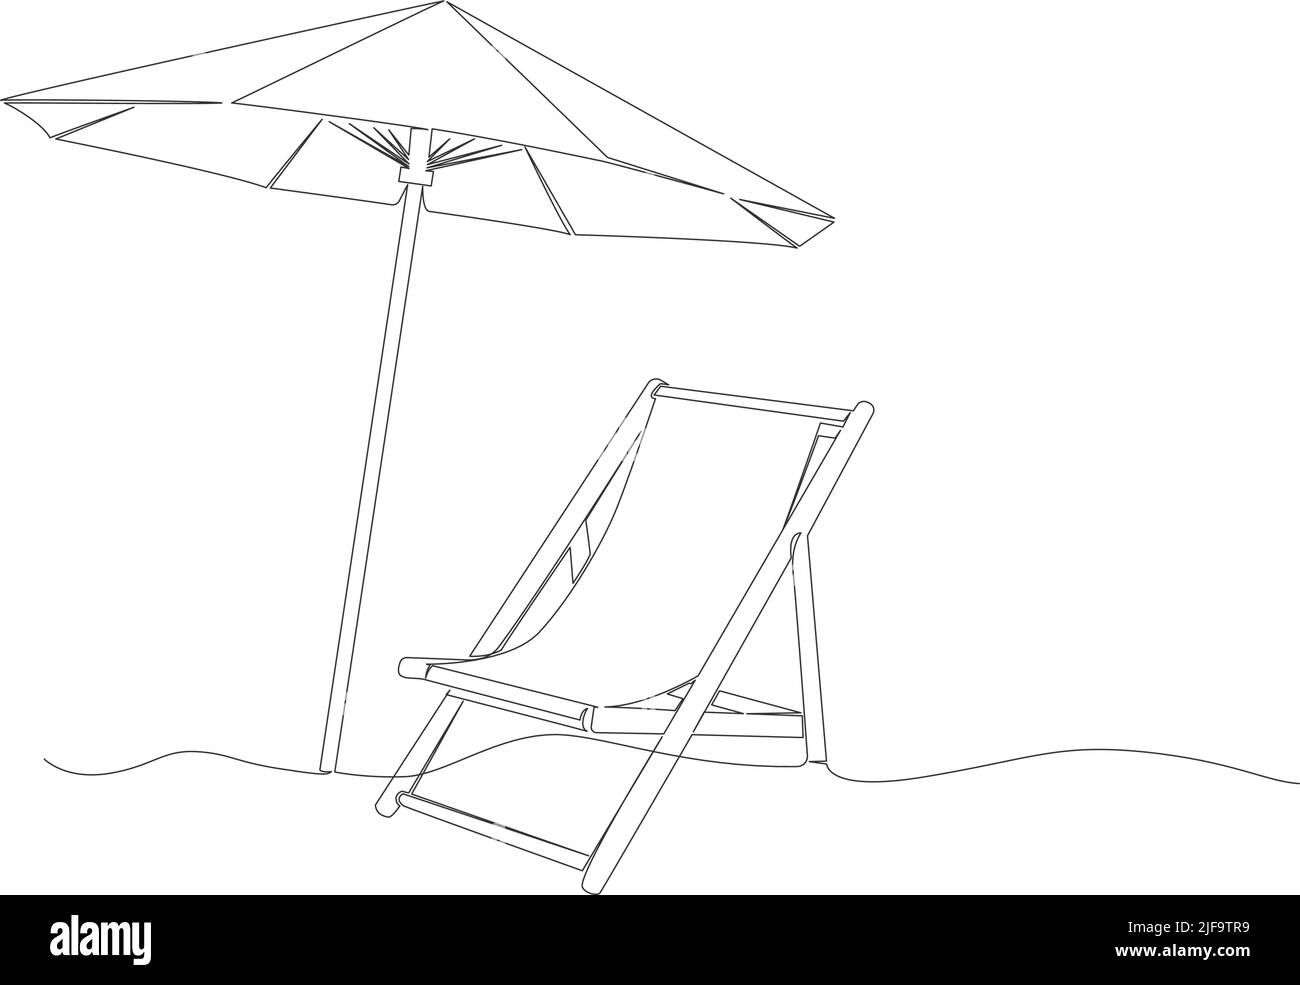 dibujo lineal de sombrilla y silla de playa aisladas sobre fondo blanco, ilustración vectorial de arte lineal Ilustración del Vector